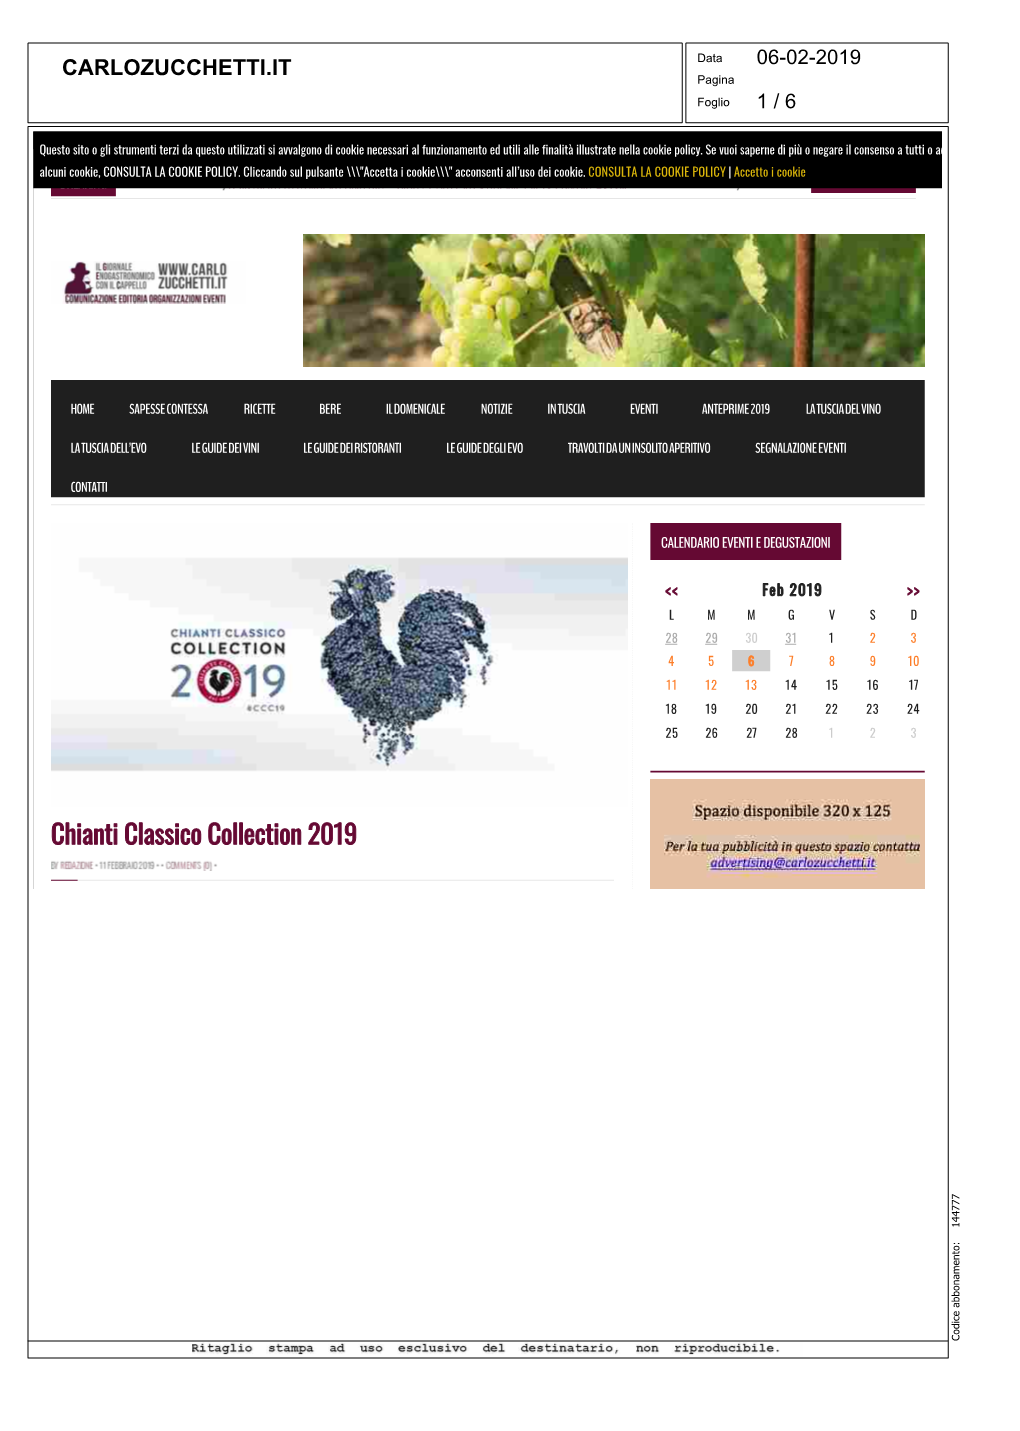 Chianti Classico Collection 2019 144777 Codice Abbonamento: CARLOZUCCHETTI.IT Data 06-02-2019 Pagina Foglio 2 / 6